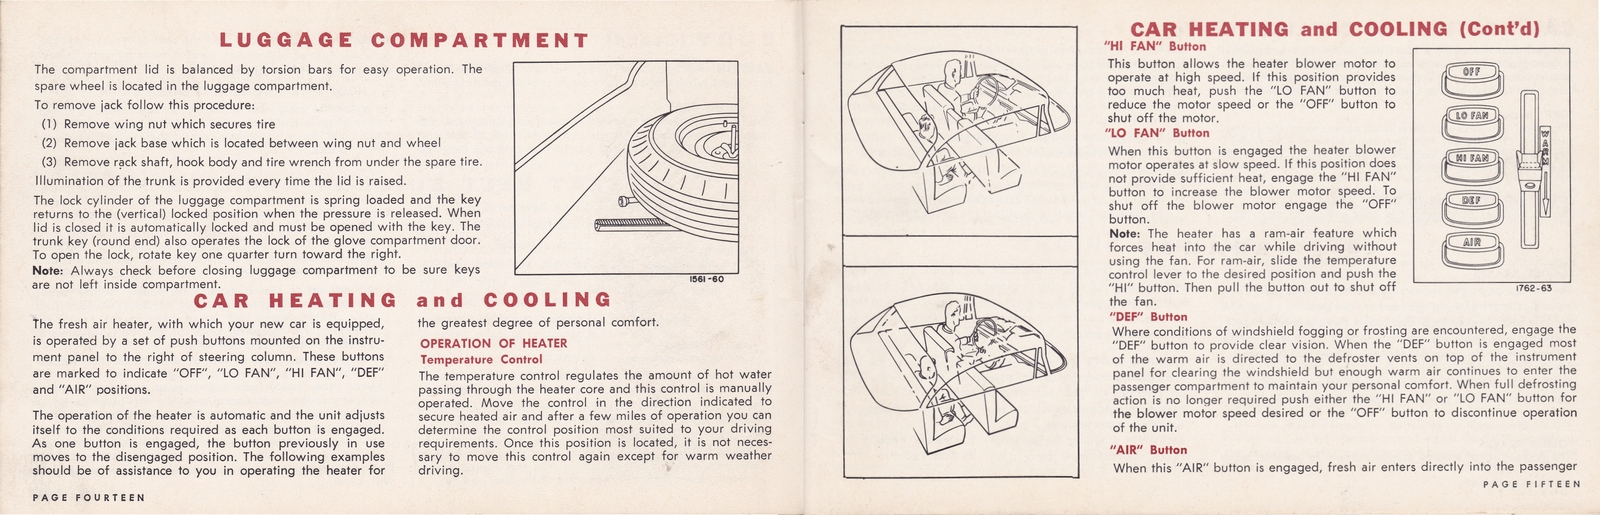 n_1964 Chrysler Owner's Manual (Cdn)-14-15.jpg